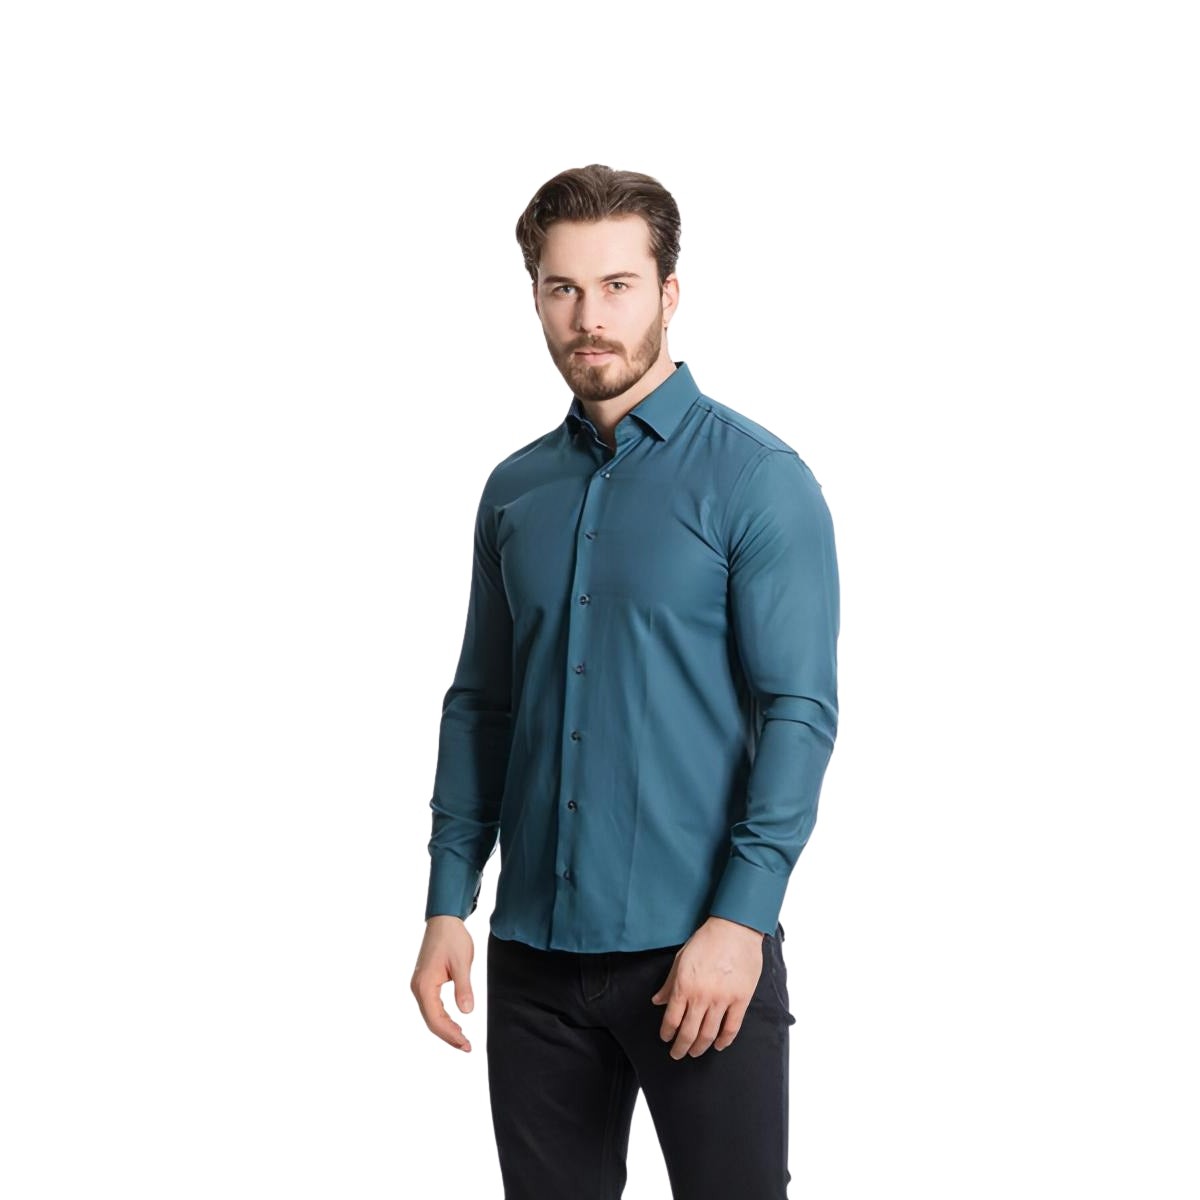 Baurotti Overhemd Slim Fit Turquoise